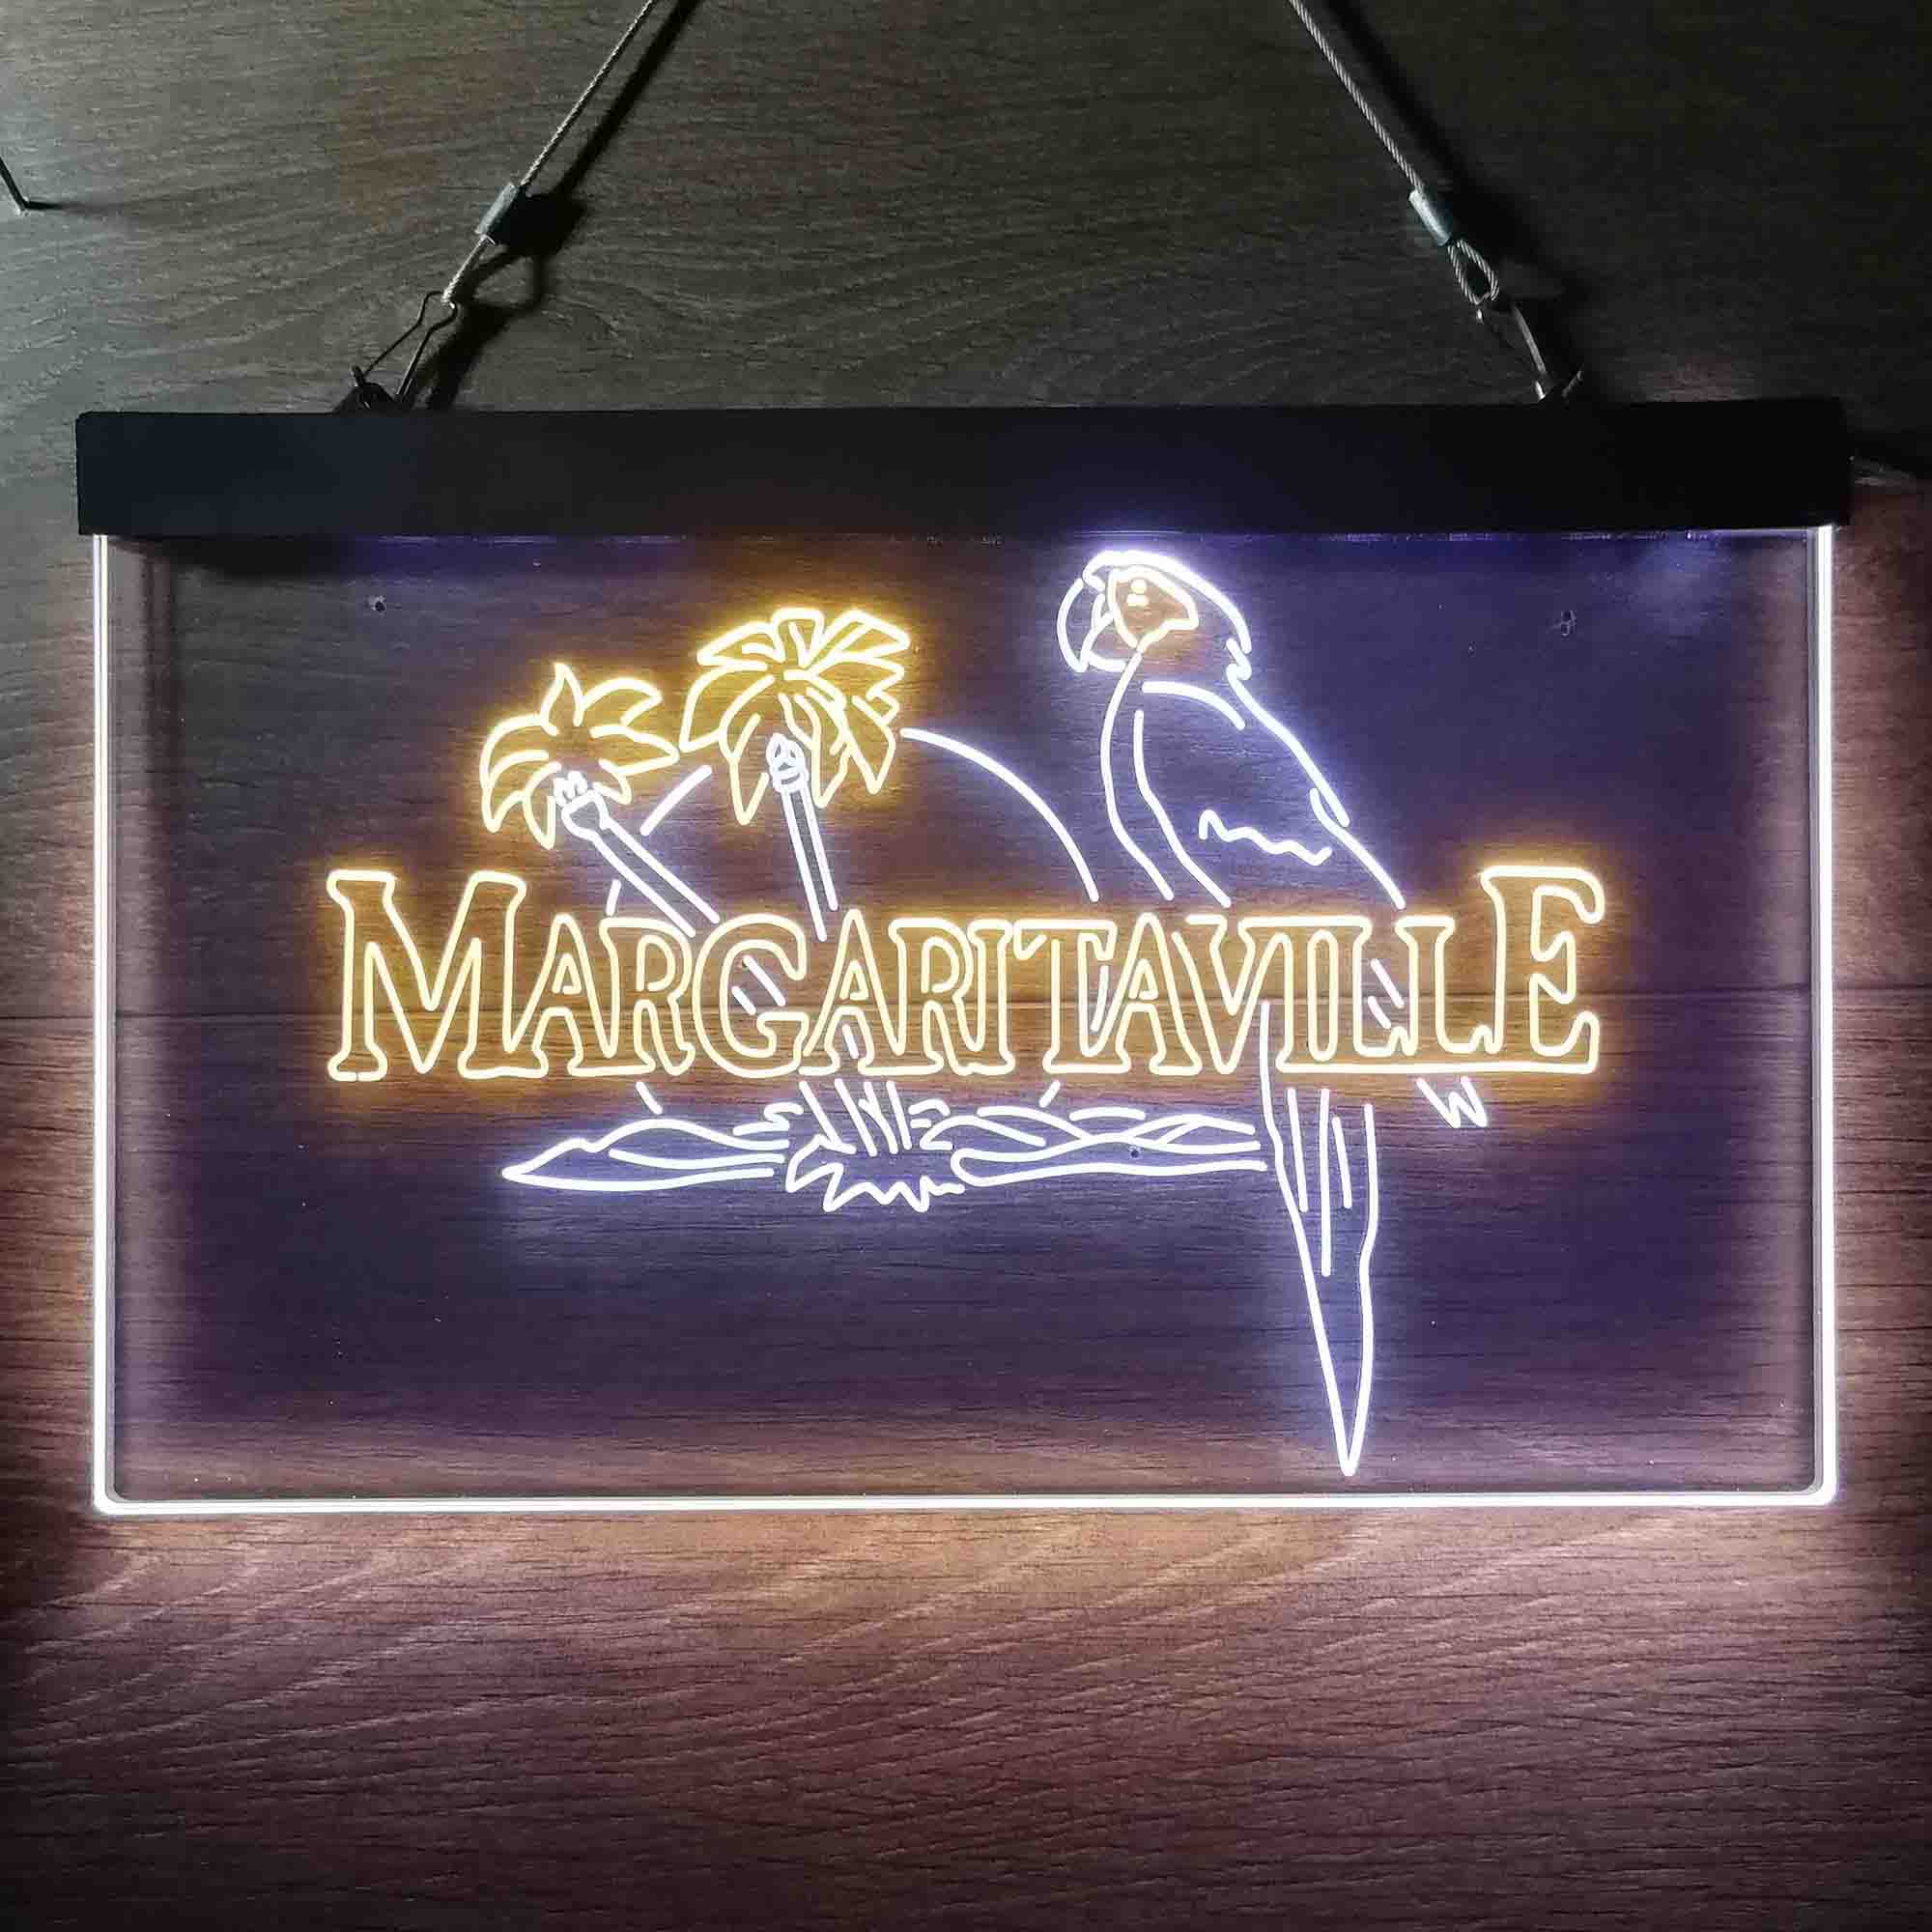 Jimmy Buffett's Margaritaville Parrot Neon LED Sign